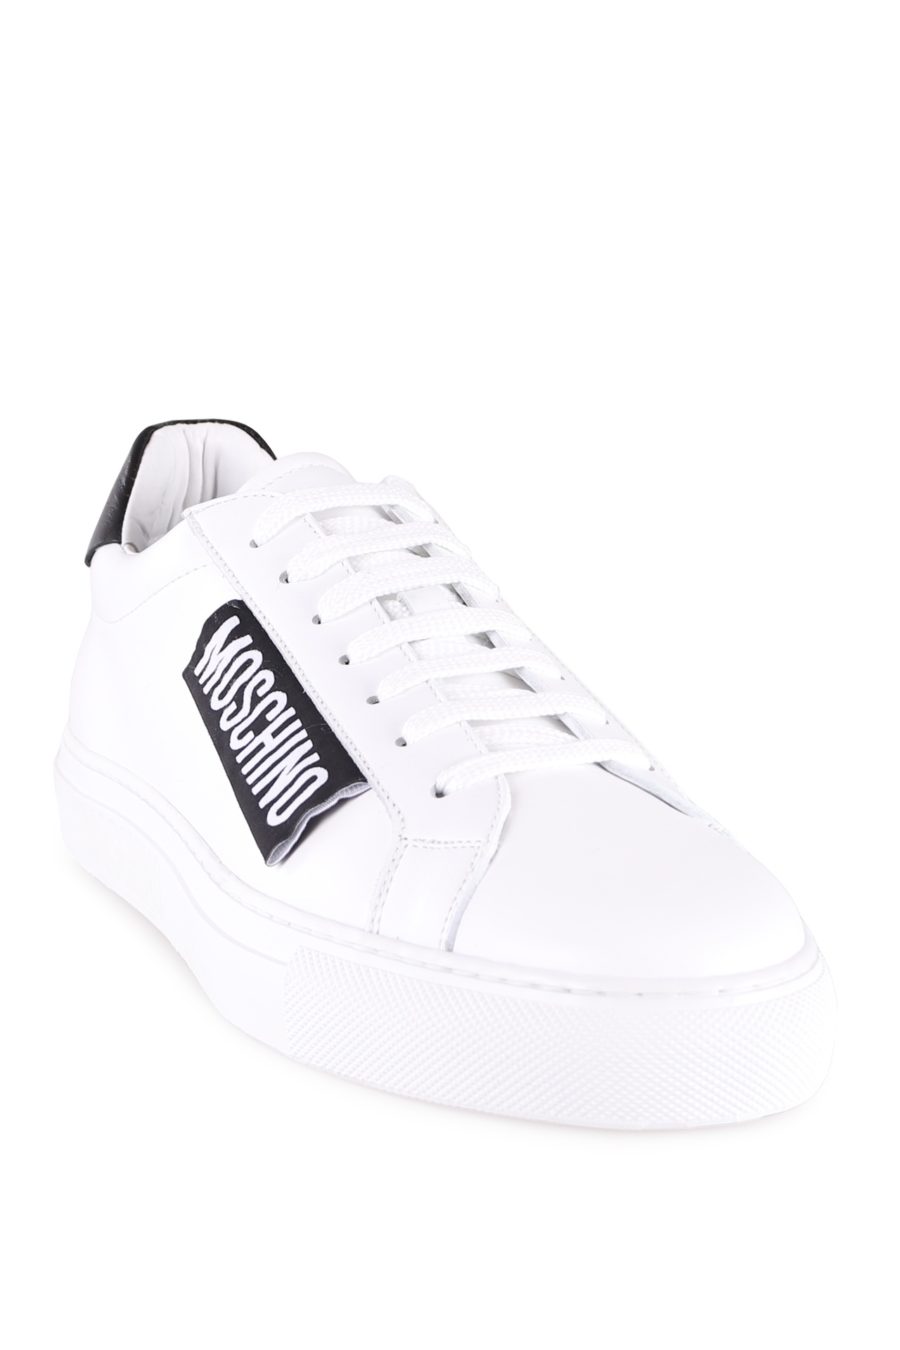 Zapatillas Moschino Couture blancas con logo - d456e9e1c3f39c488314e1750132a76980a4791e